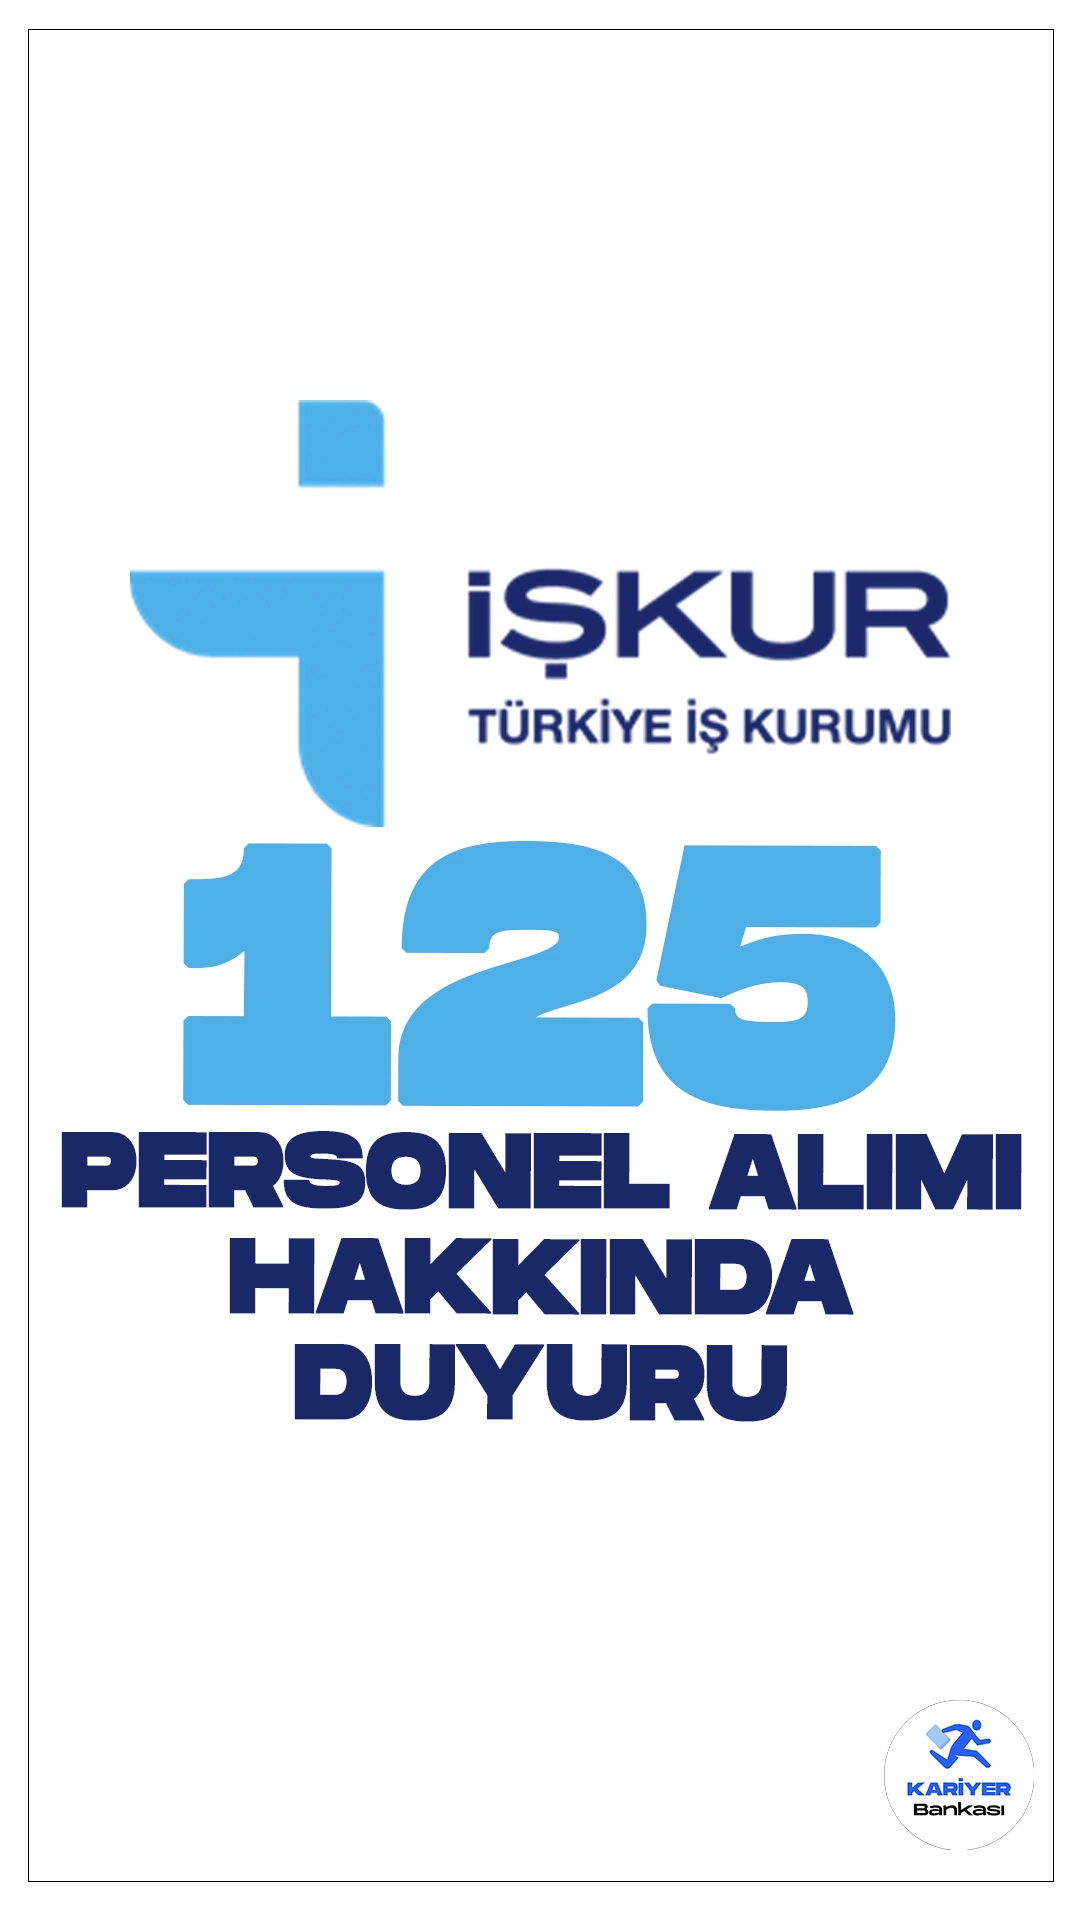 İŞKUR 125 Personel Alımı Hakkında Duyuru Yayımlandı. Türkiye İş Kurumu (İŞKUR) sayfası üzerinden yayımlanan duyuruda, İŞKUR taşra teşkilatında istihdam edilmek üzere 125 sözleşmeli büro personeli alımı kapsamında, asil olarak yerleşen adayların nihai sonuçlarına ilişkin duyuru 07.07.2023 tarihinde İŞKUR internet sayfasında yayımlandığı aktarıldı. İlgili duyuruda, Sözleşmeli Büro Personeli ilanı sonucu asil veya yedek olarak yerleşen adaylardan çeşitli nedenlerle hakkını kaybedenlerinin yerine atama sırası gelen yedek adaylara ilişkin listenin açıklandığına yer verildi.Yedek adaylardan sırası gelenlerin, istenilen belgeleri 05.07.2024-19.07.2024 tarihleri arasında belirtilen adrese teslim etmeleri gerektiği kaydedildi.